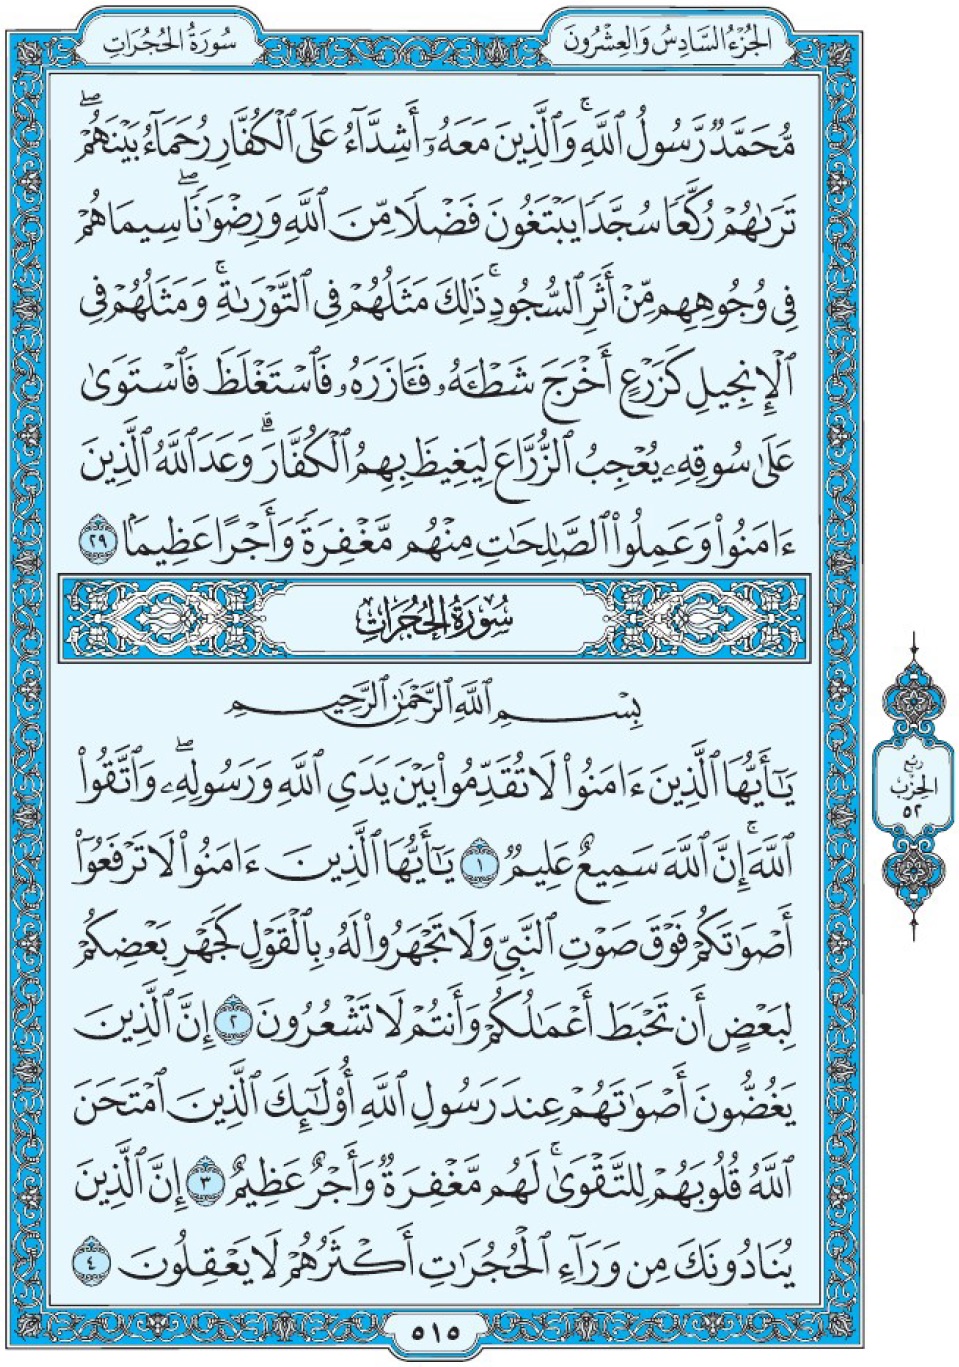 Коран Мединский мусхаф страница 515, сура 49 аль-Худжират سورة ٤٩ الحجرات 